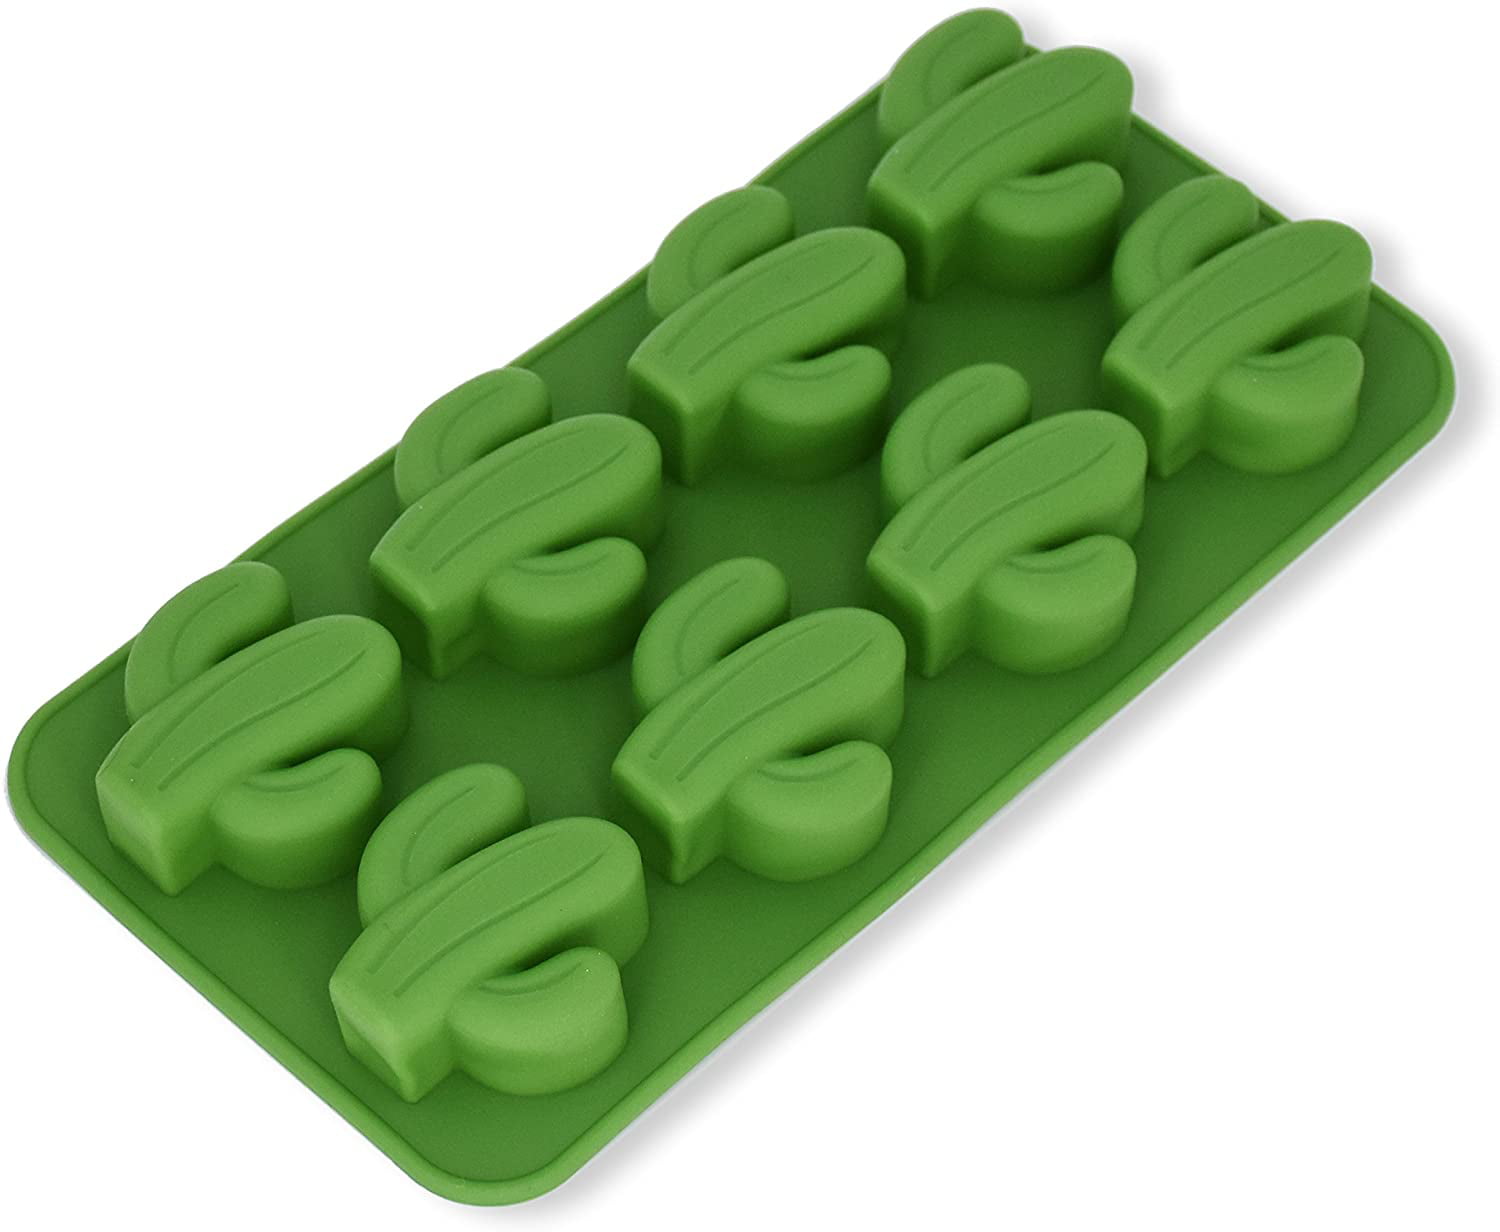 Main Stays Green Ice Mold Tray Cactus Novelty Ice Cube 8 Mold Tray 